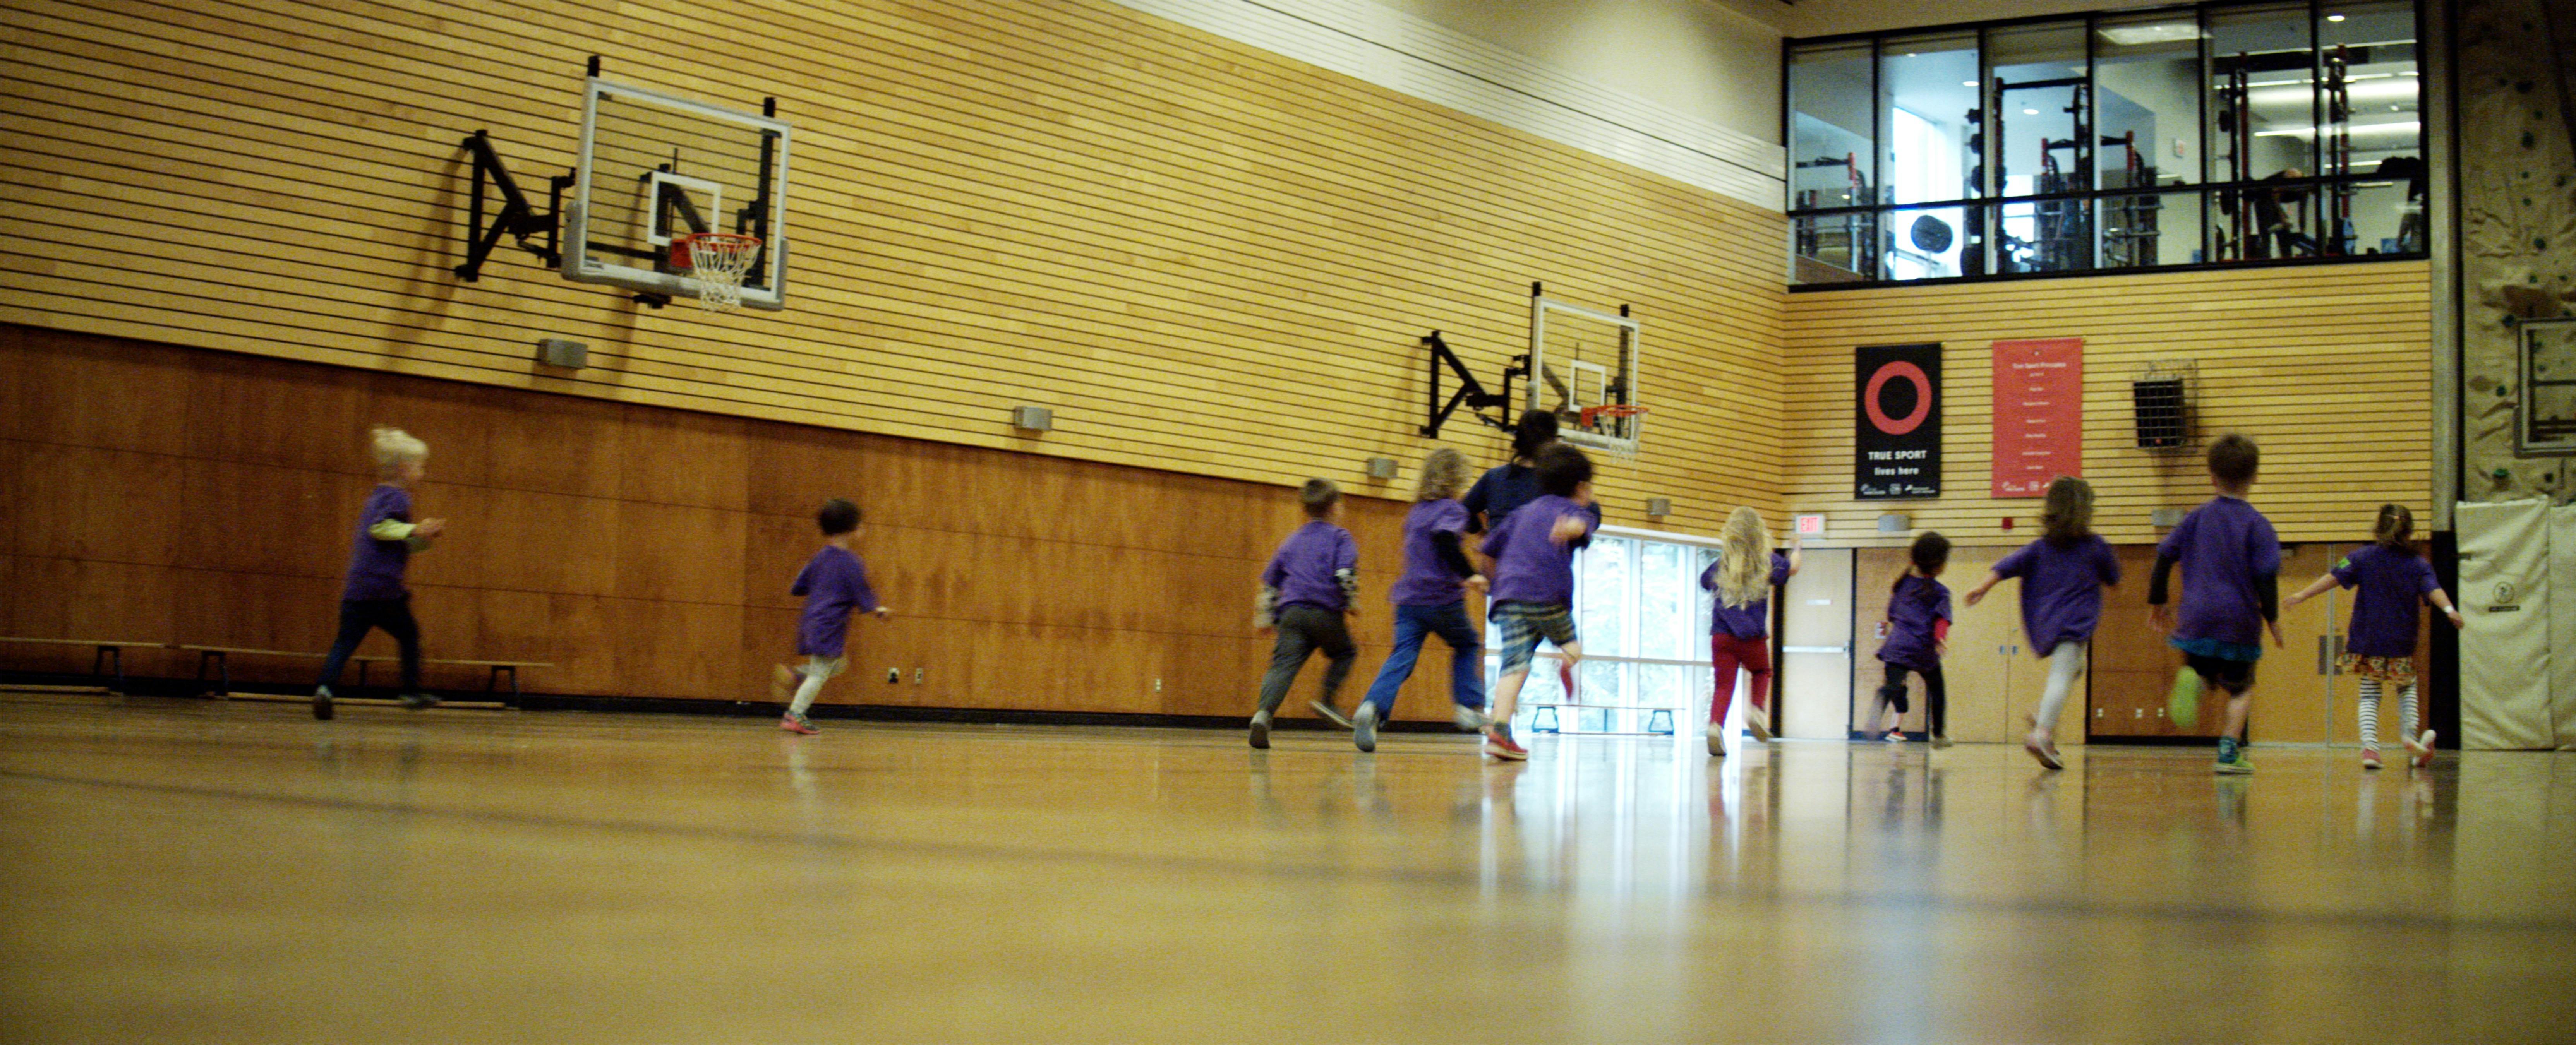 Children running in a gymnasium